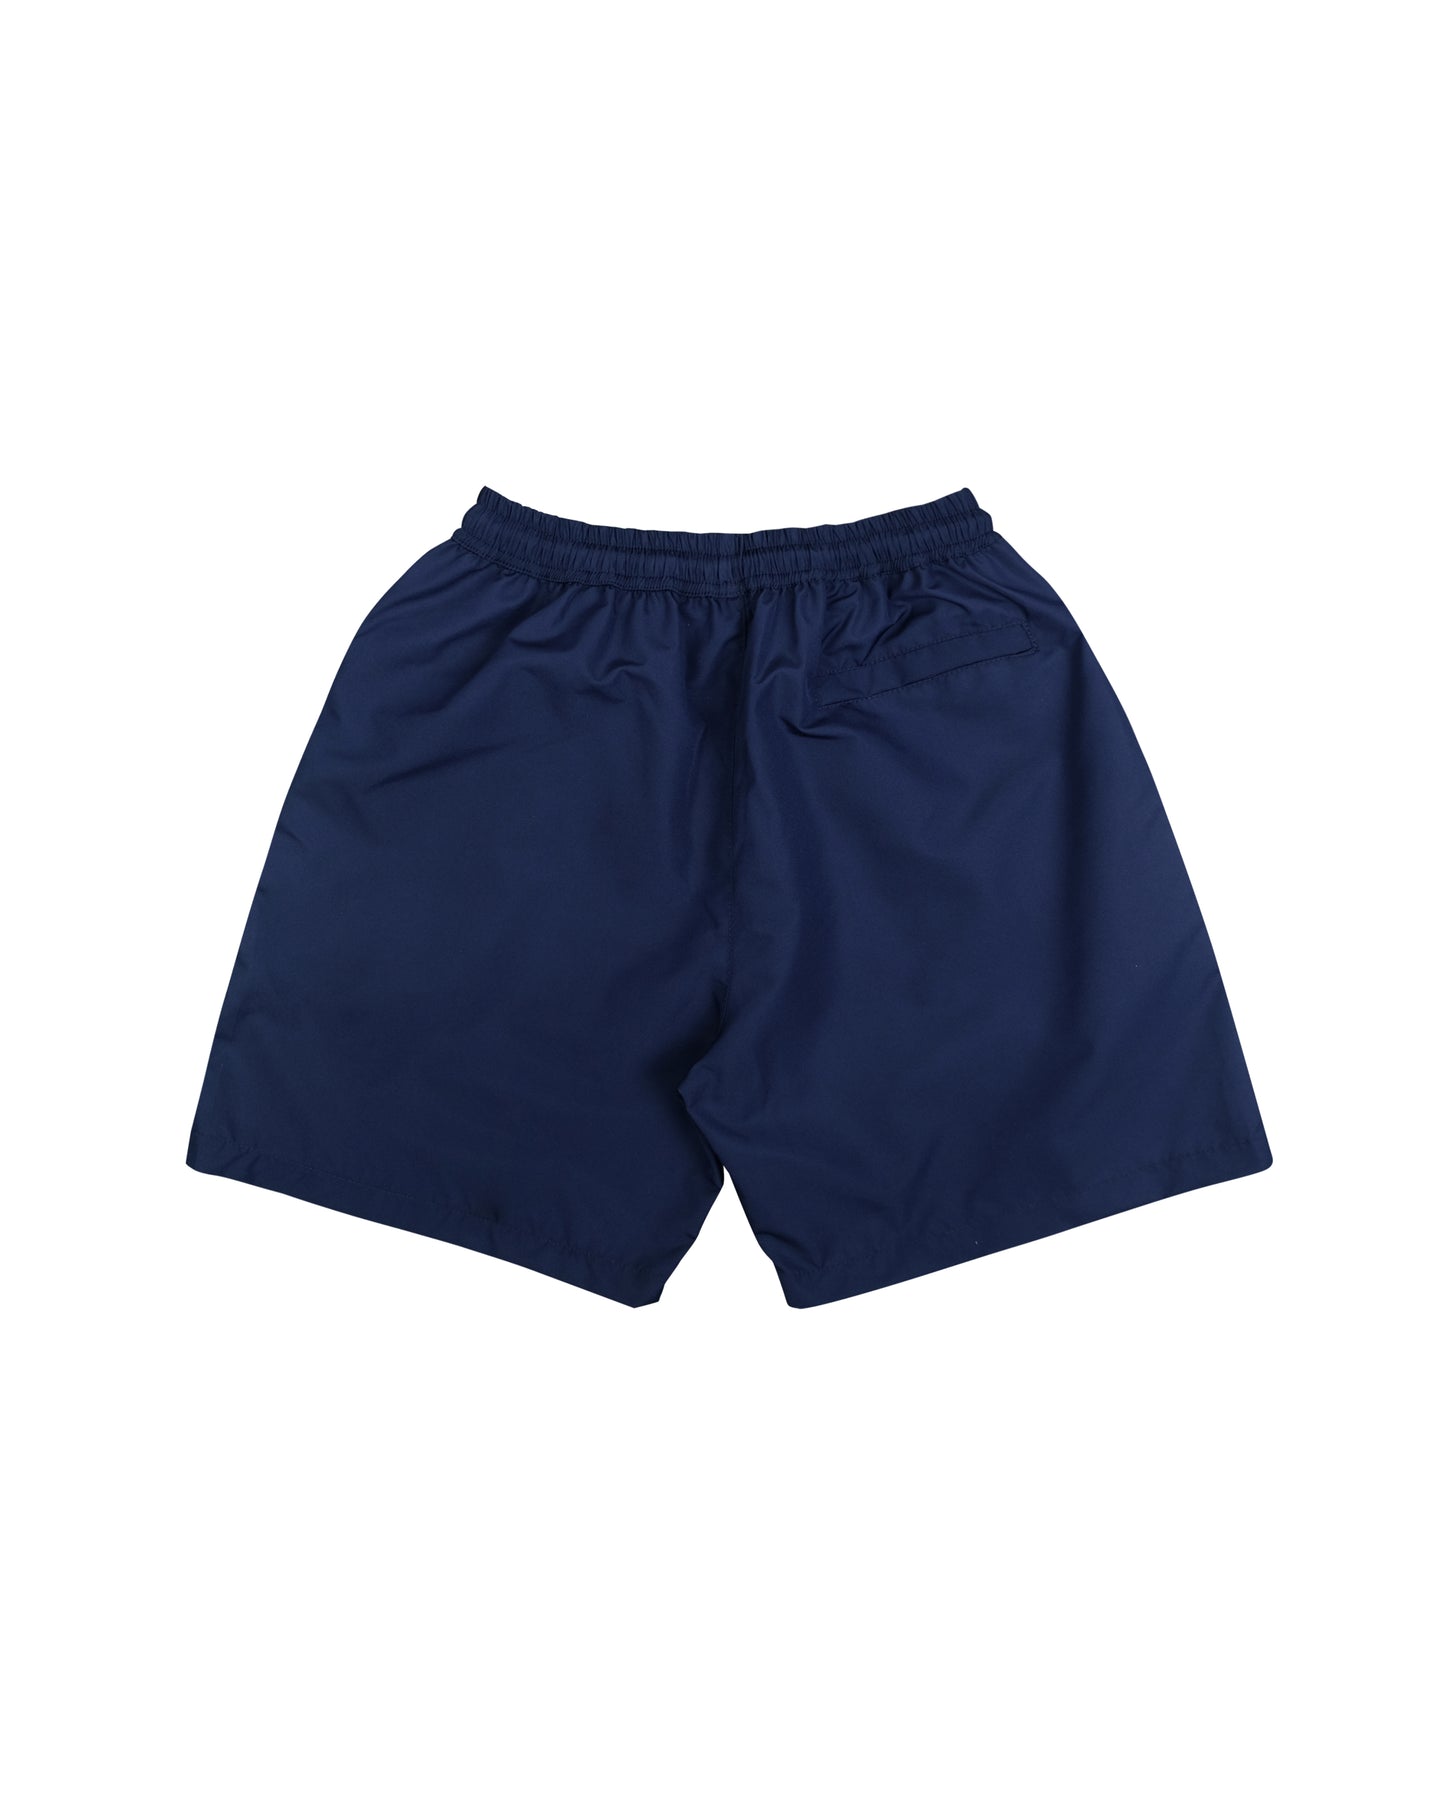 Lax Navy Board Shorts